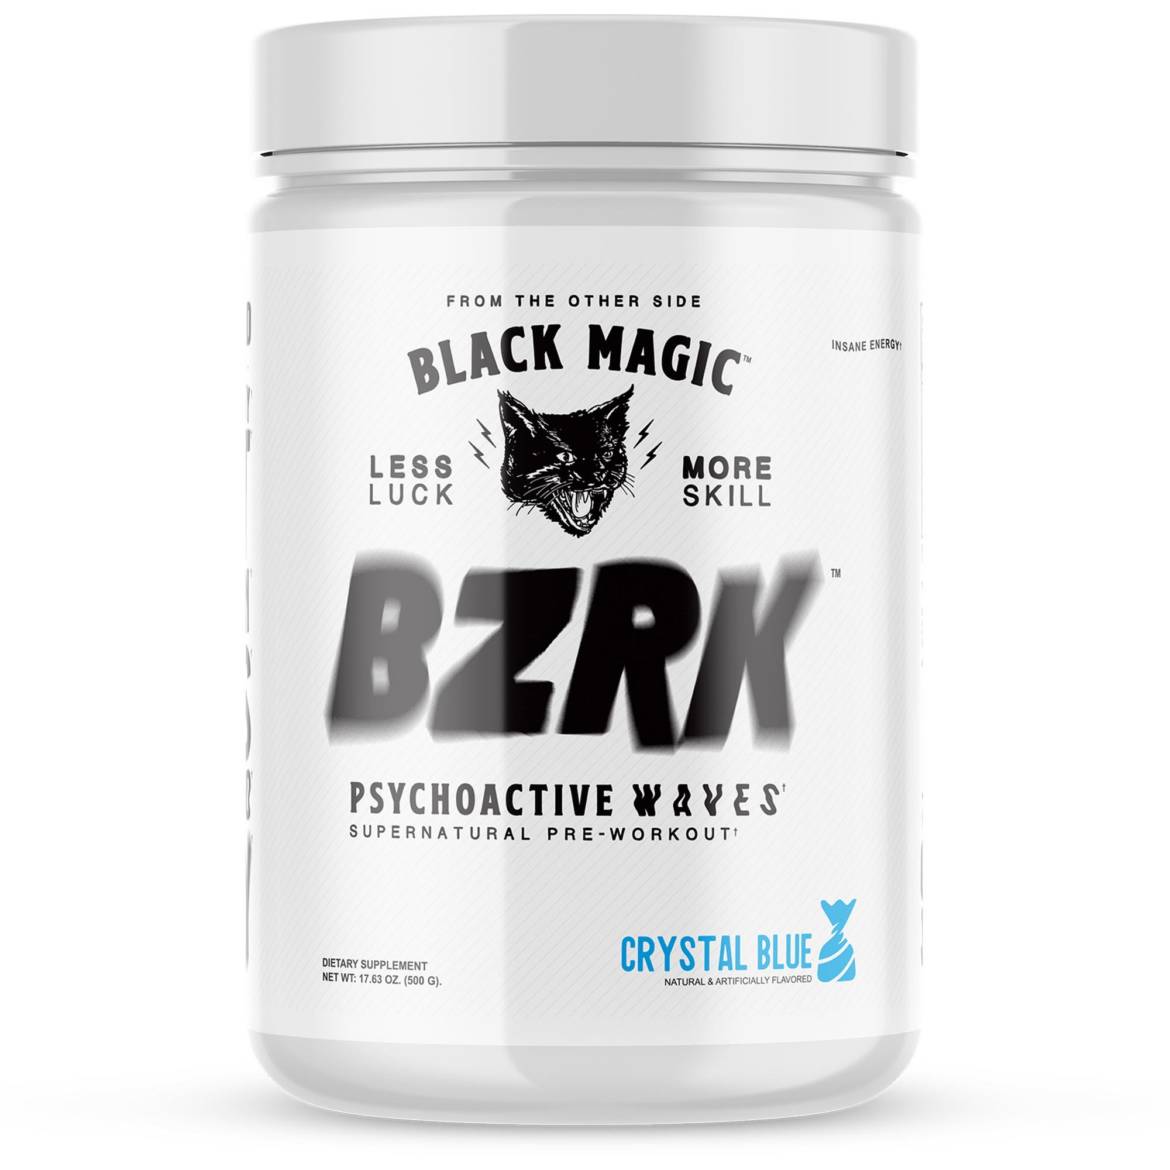 Black_Magic_Product_Renders-BZRK-crystal_2000x.jpg